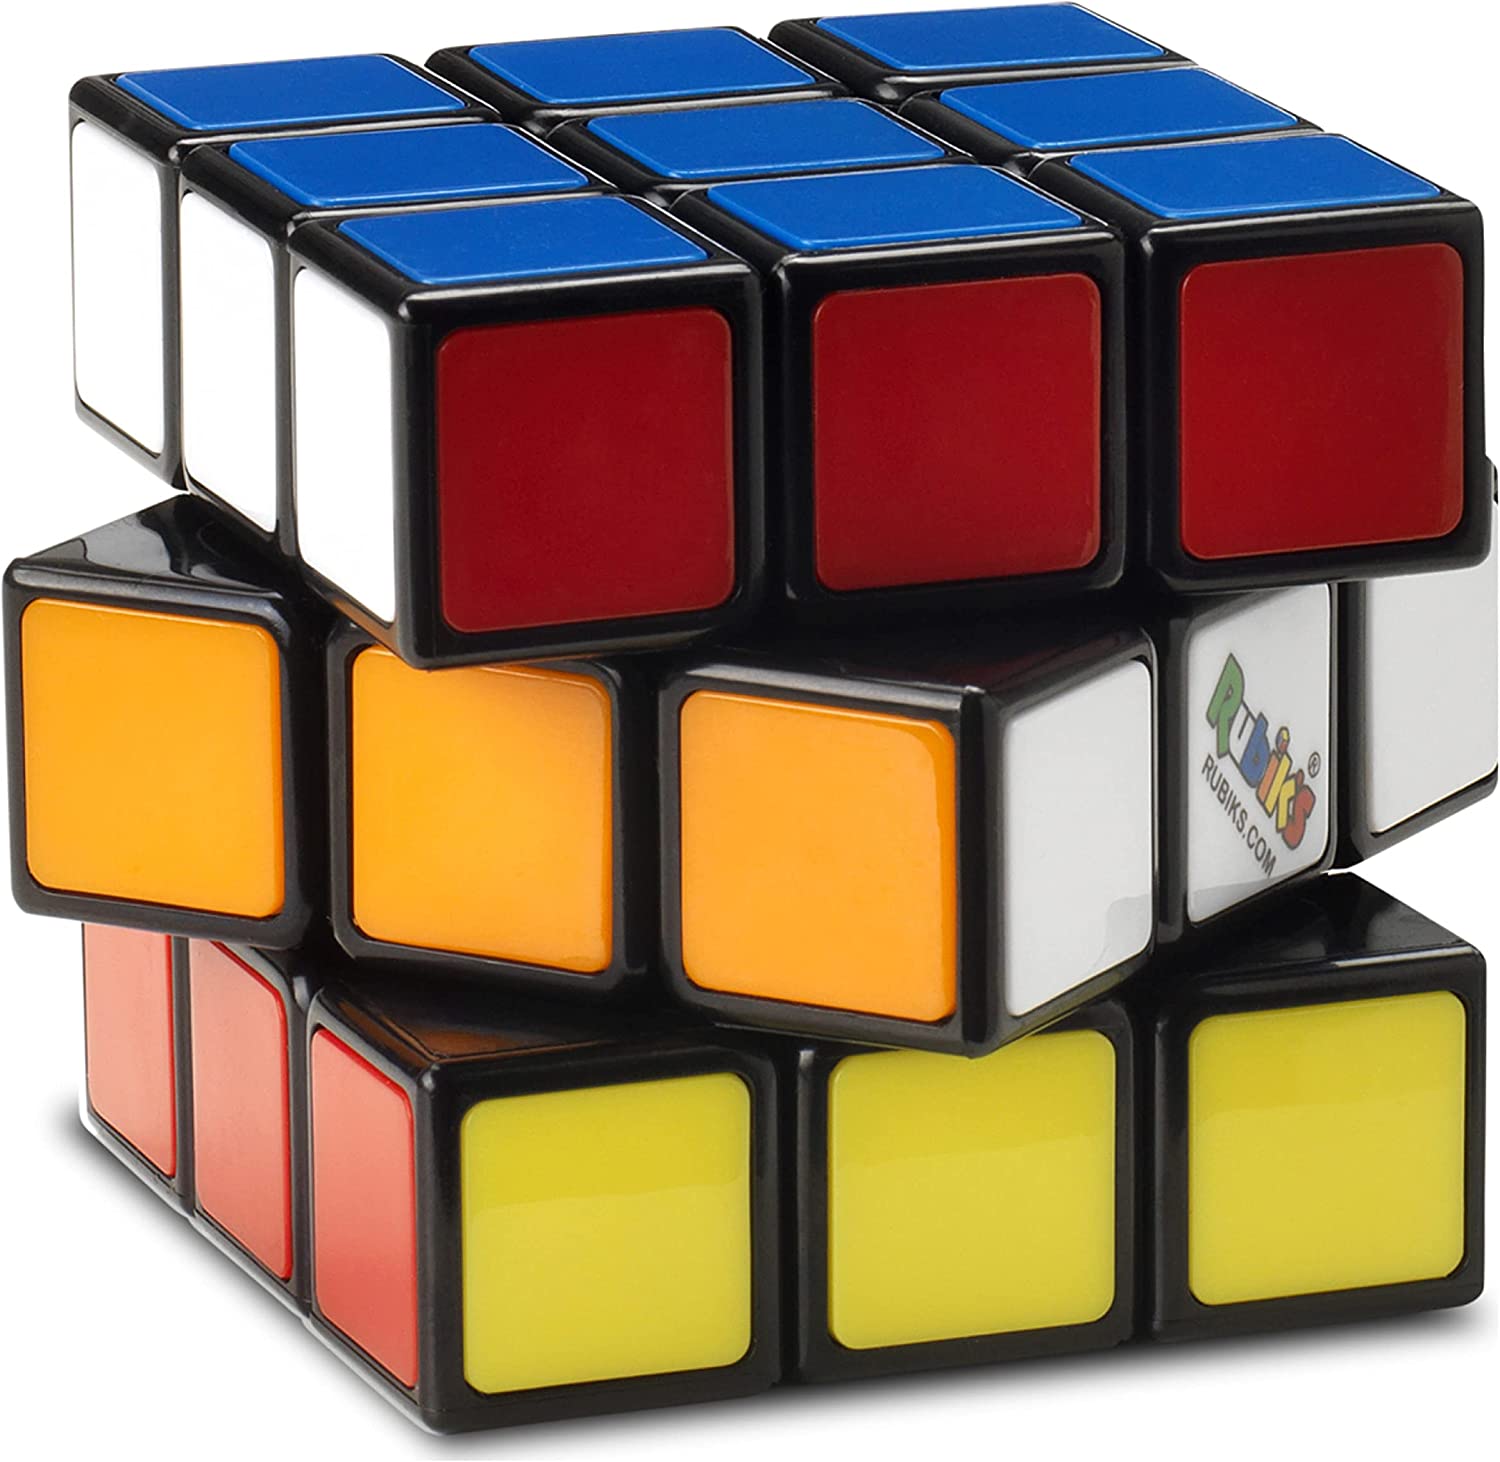 Rubiks Tiled Trio Pack